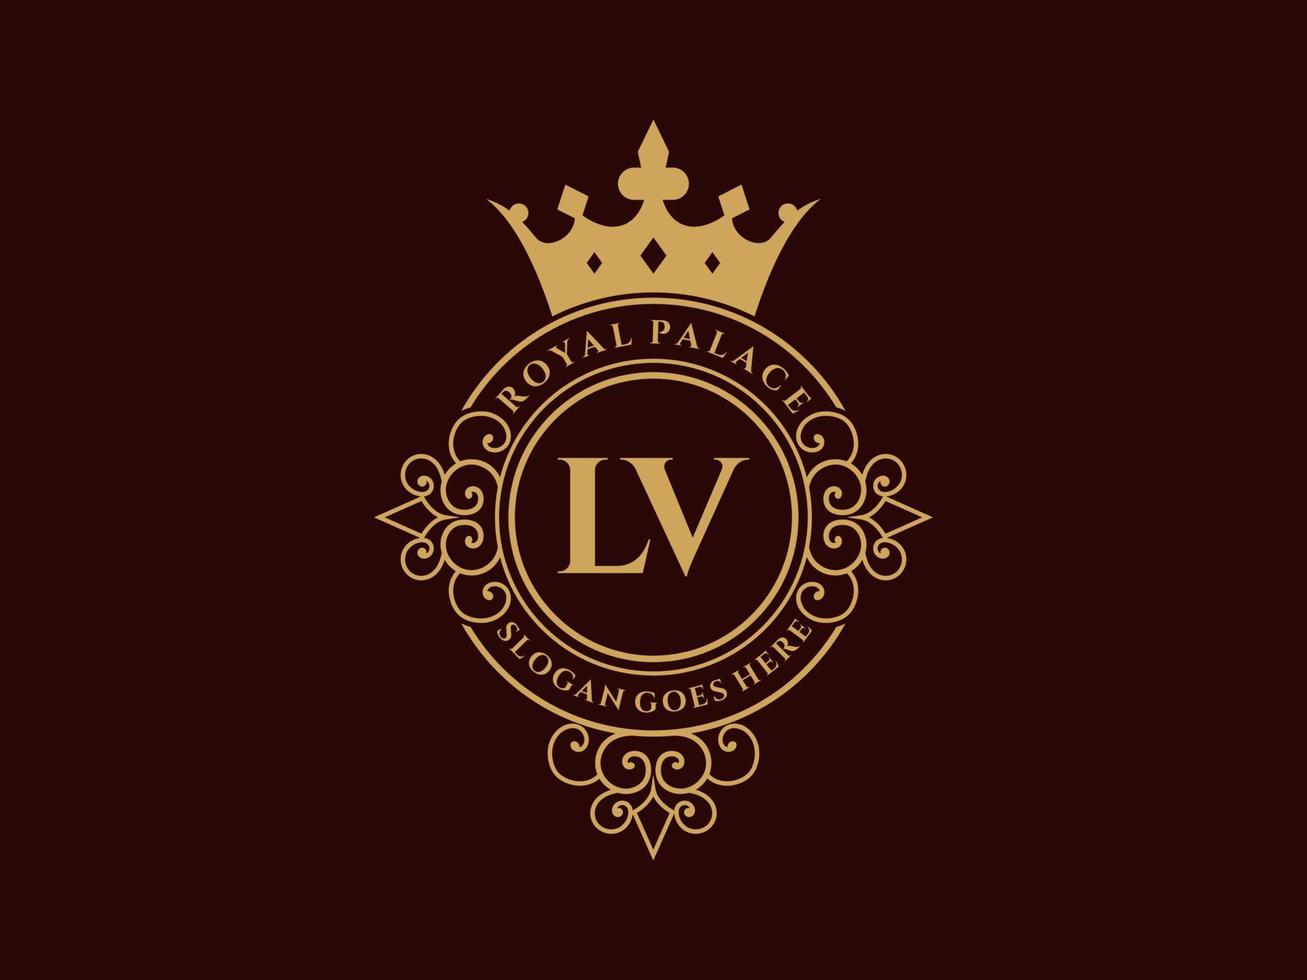 lettre lv logo victorien de luxe royal antique avec cadre ornemental. vecteur